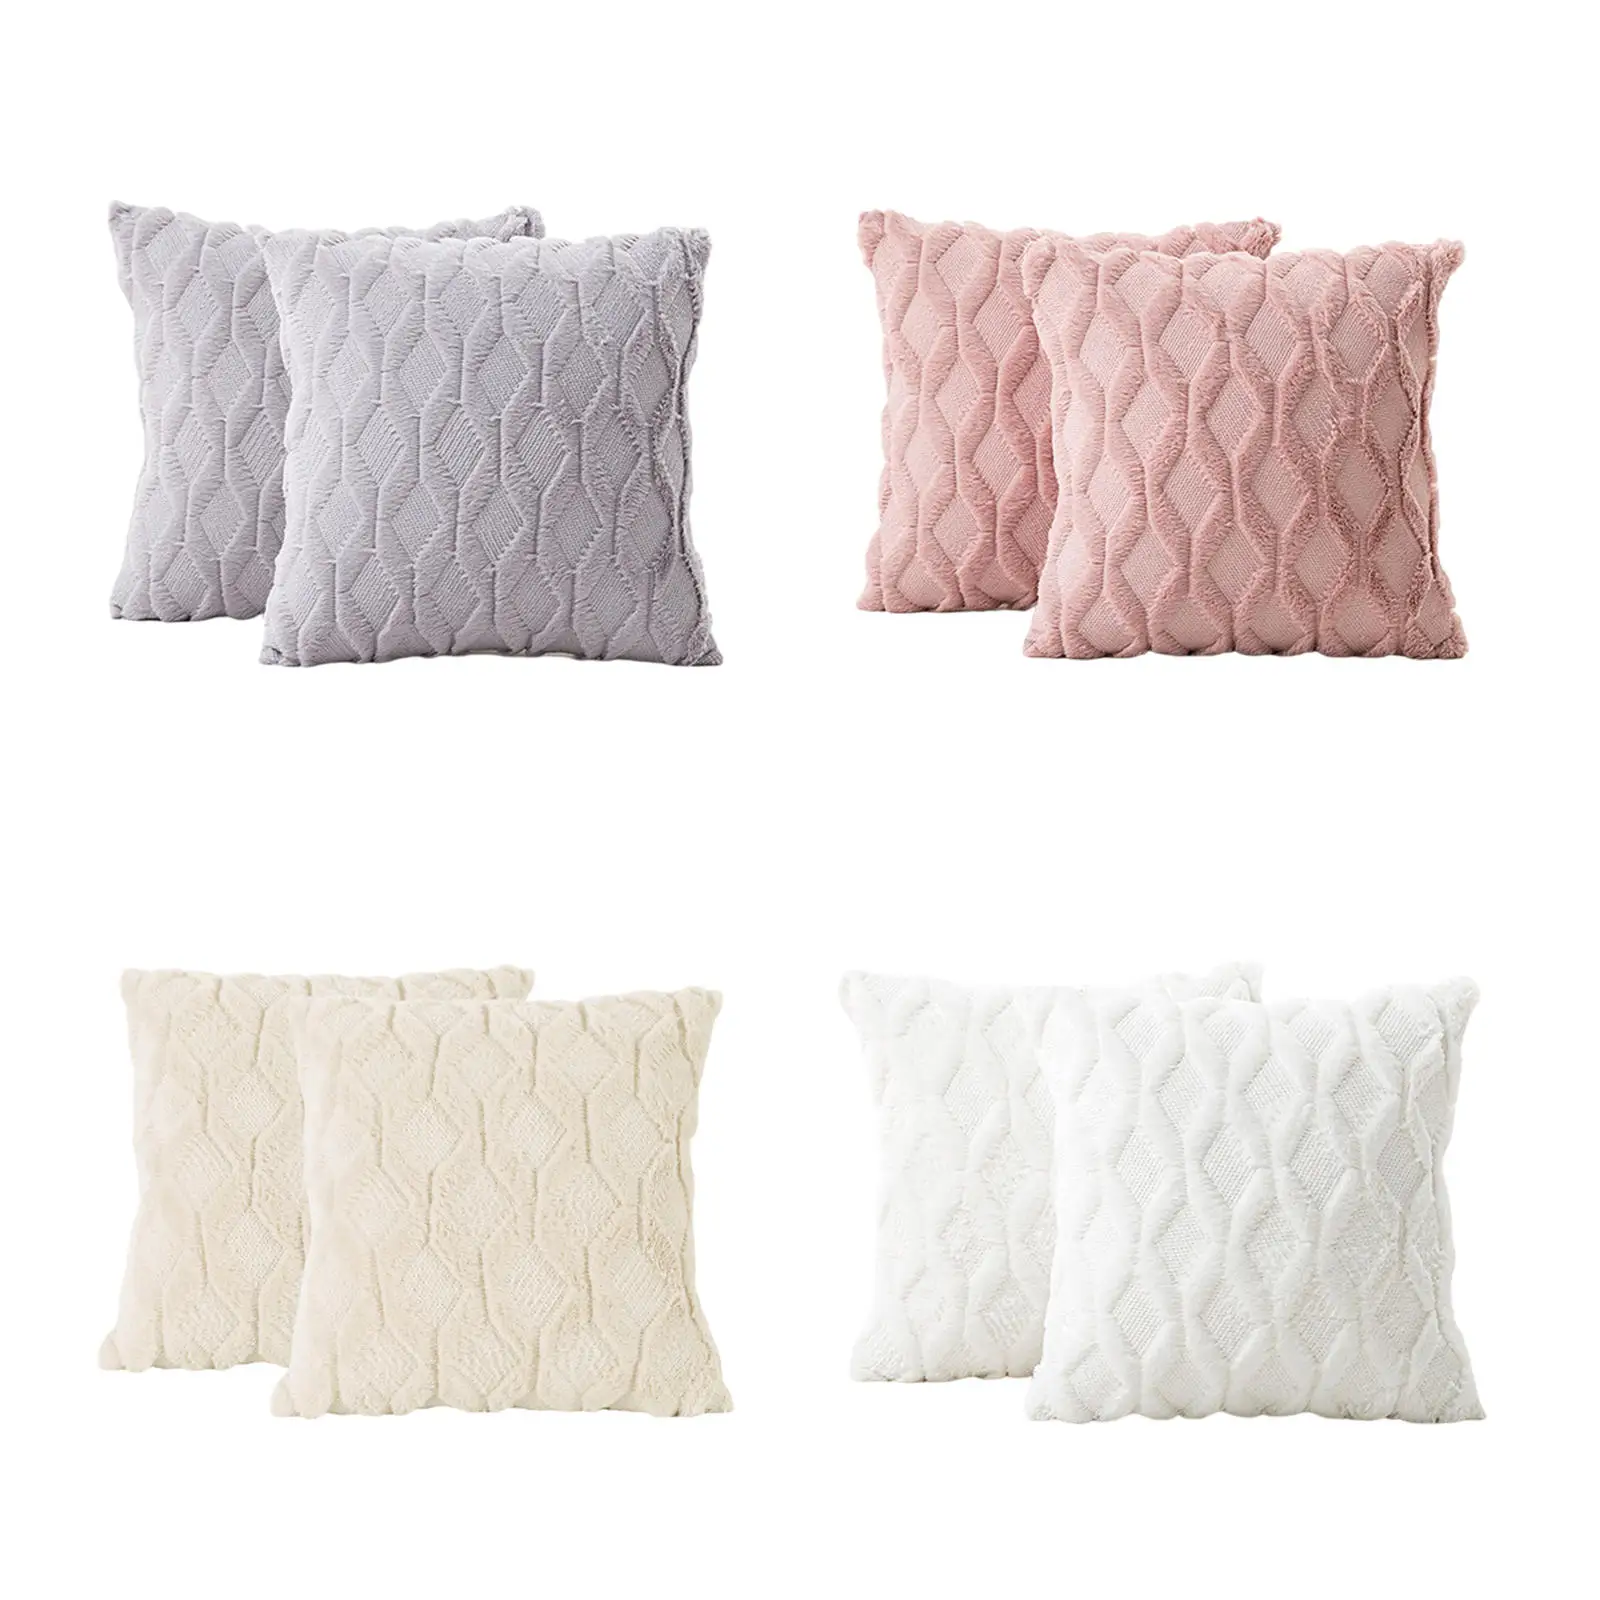 Throw Pillow Cover W/ Hidden Zipper Pillow Case for Decorative Gifts